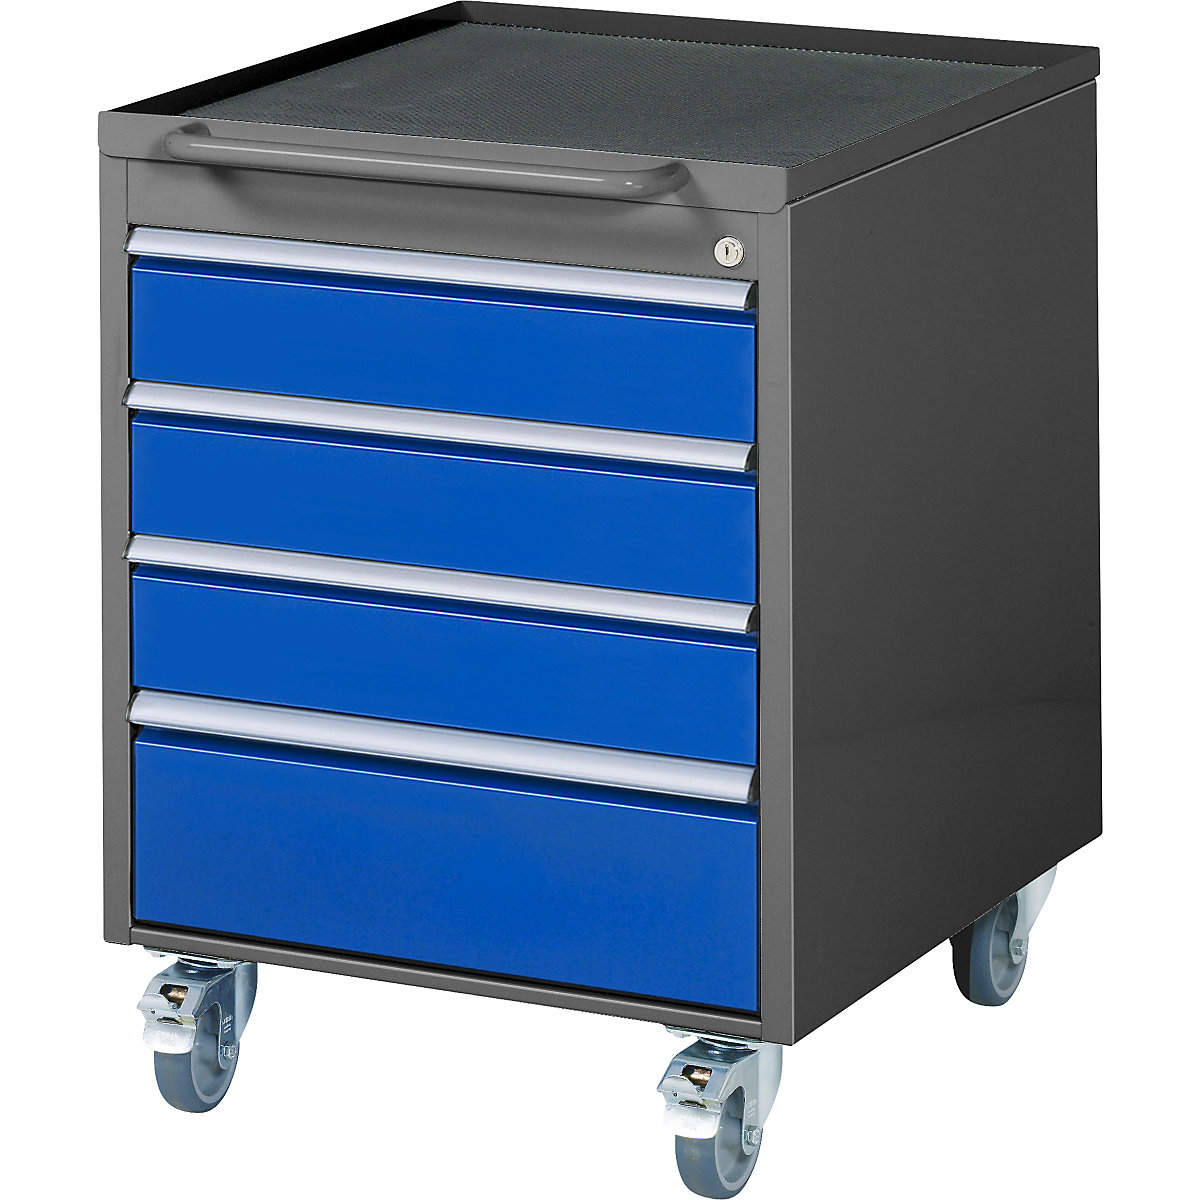 Pojazdný kontajner – RAU, v x š x h 765 x 580 x 650 mm, 4 zásuvky, antracitová metalíza / enciánová modrá-3